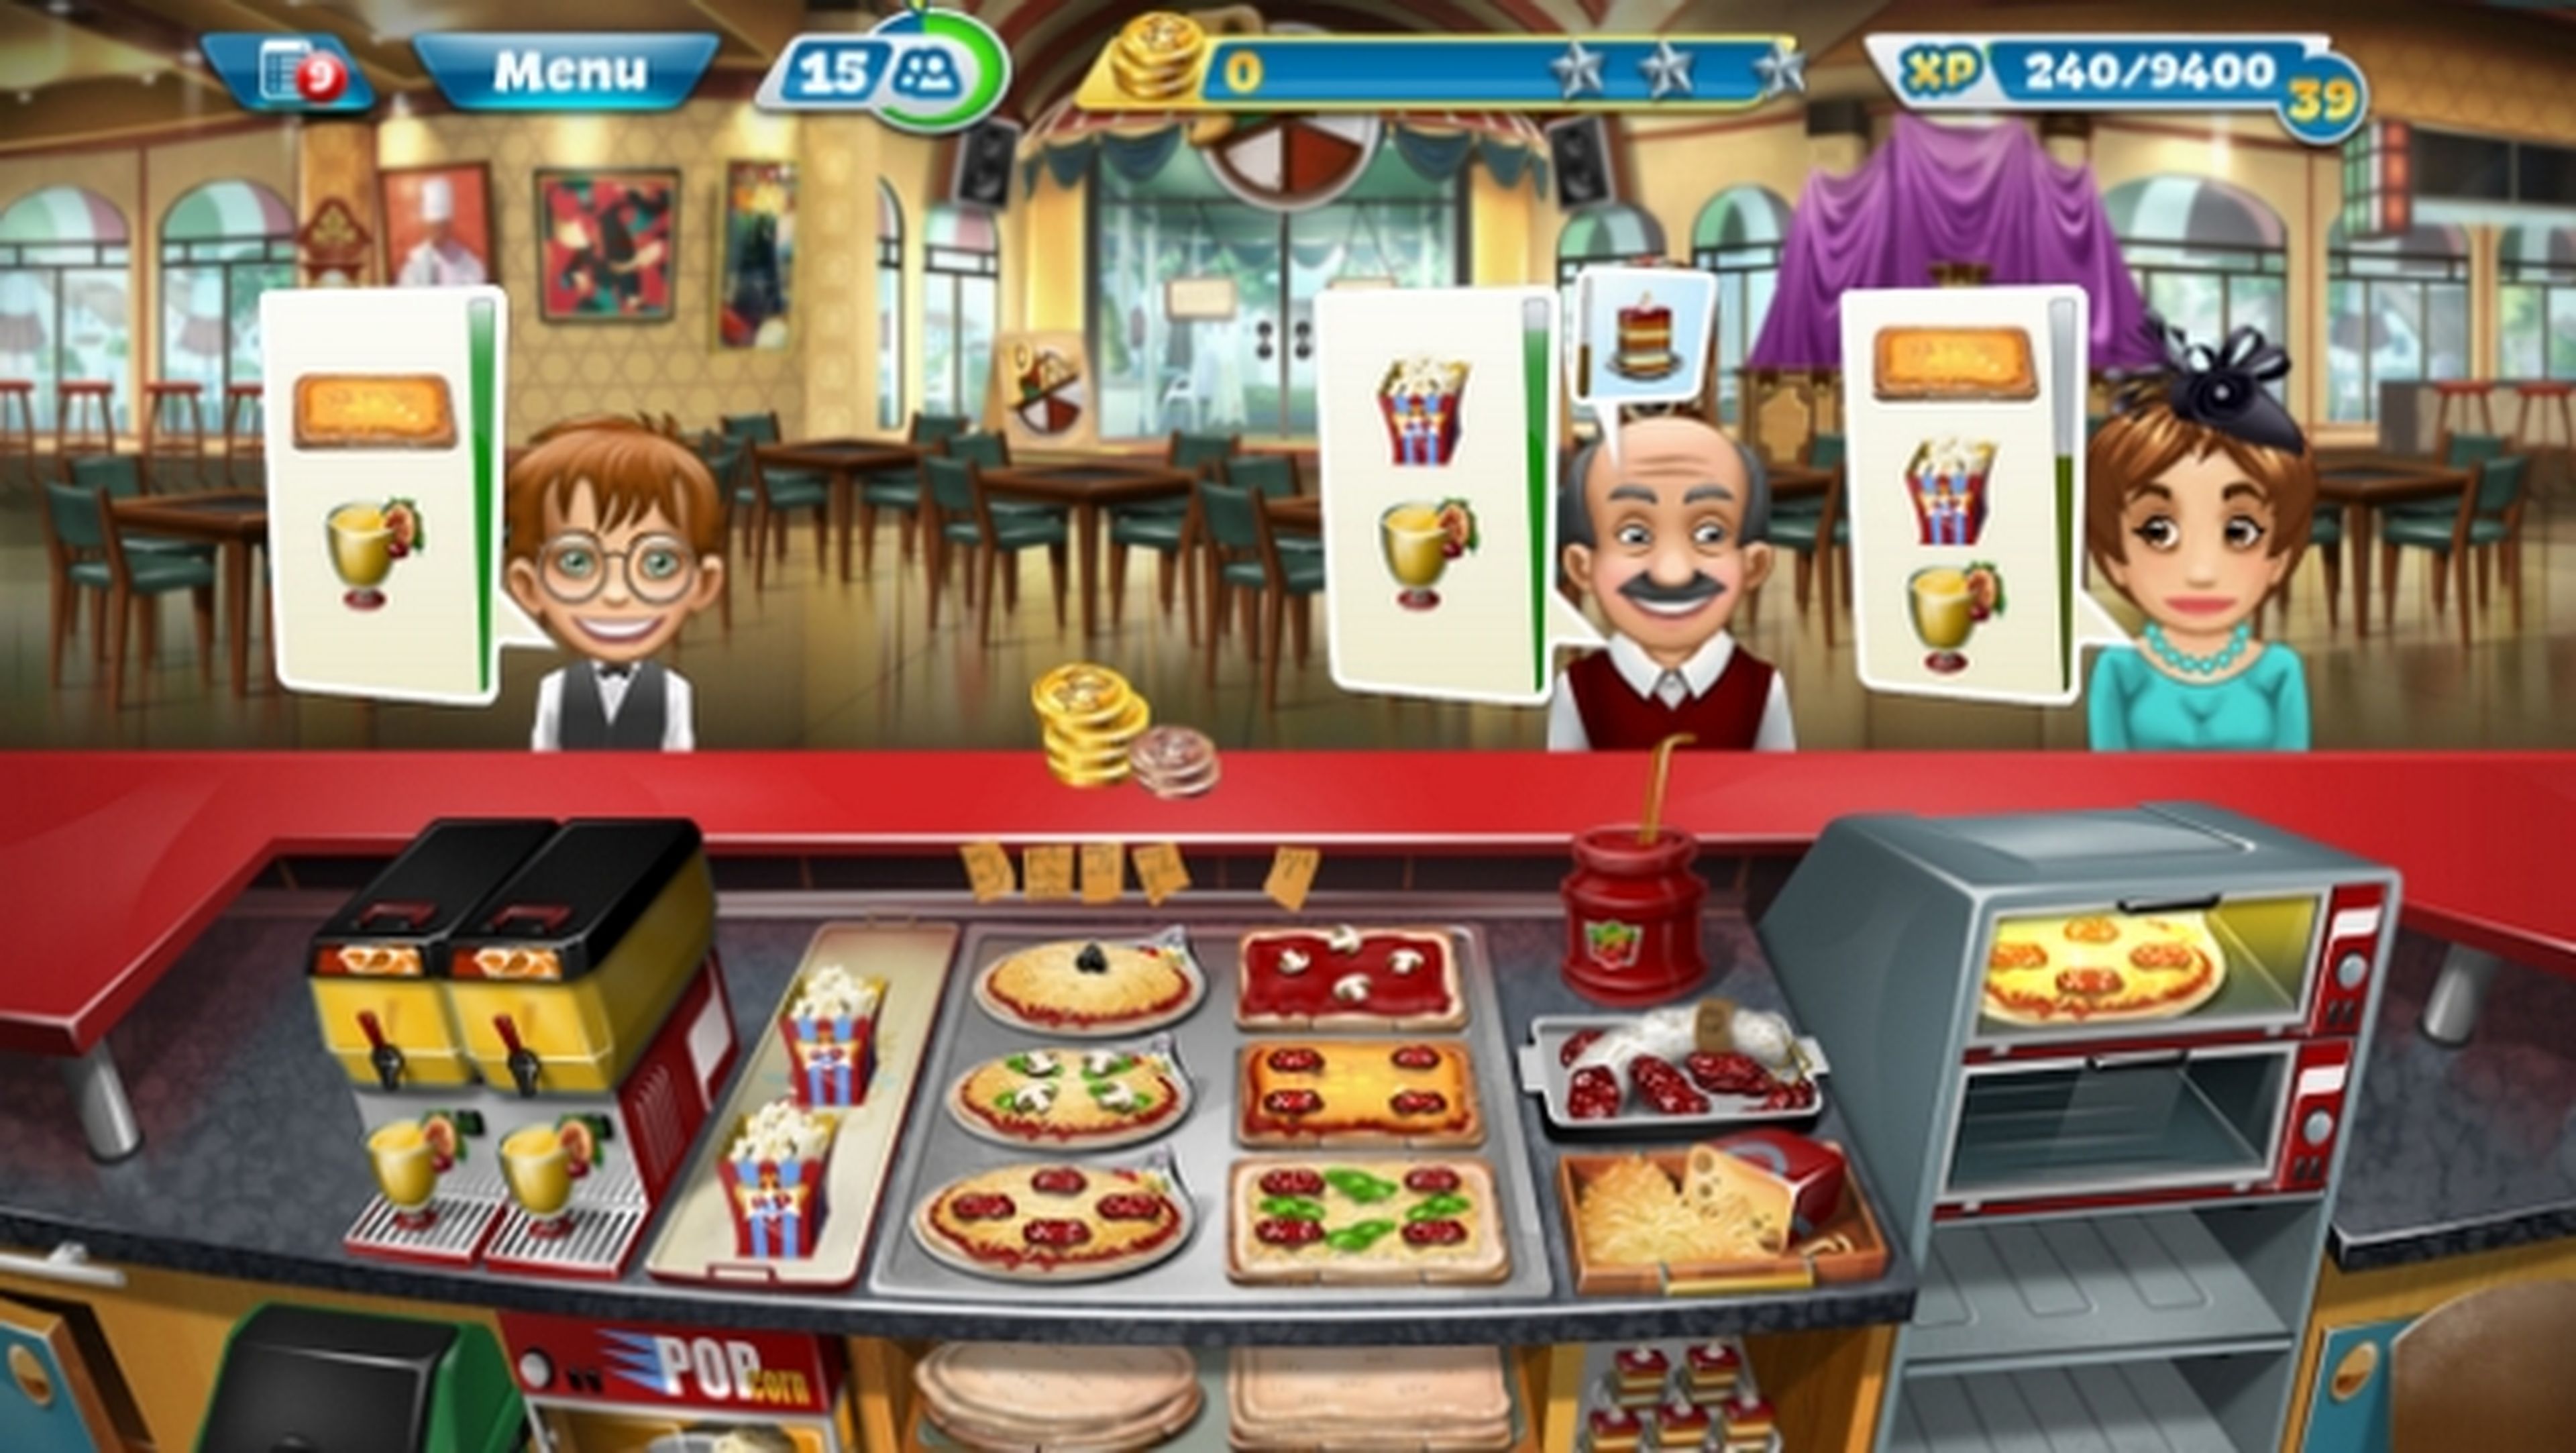 Ortografía Premisa Asimilación Los mejores juegos de cocina para Android, iPhone y iPad | Computer Hoy